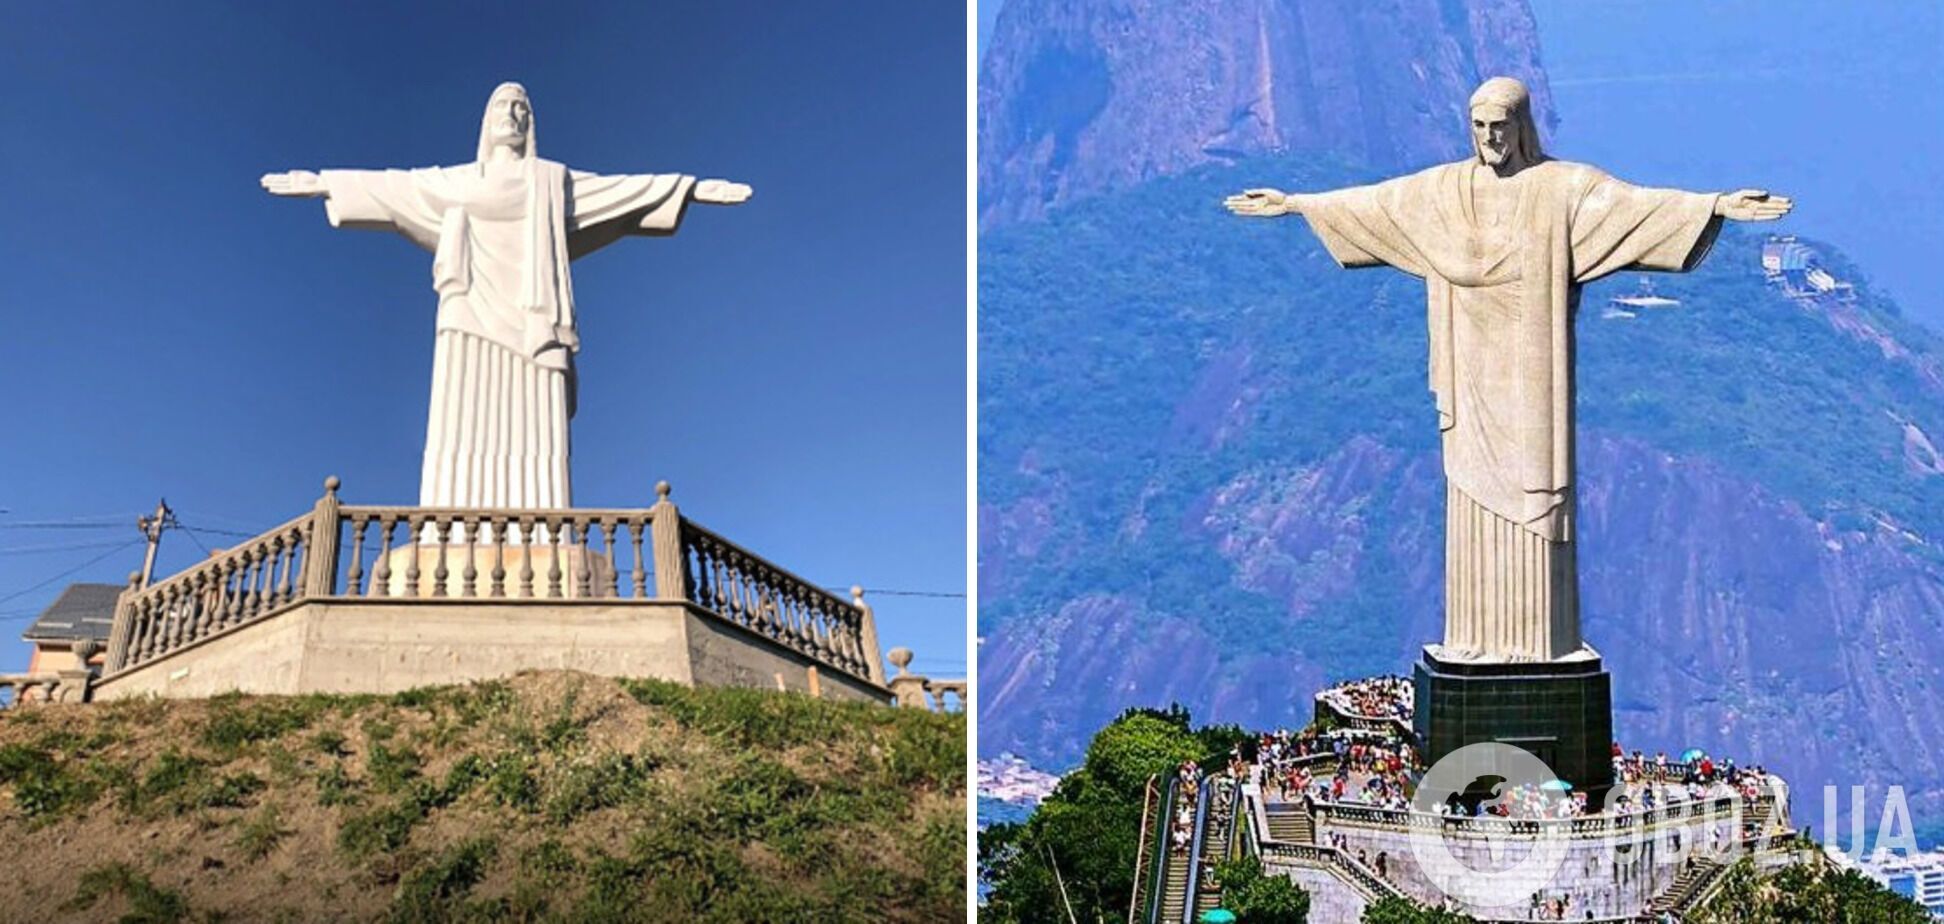 Днепр – Нью-Йорк, а Трускавец – Рио-де-Жанейро: какие украинские города имеют заграничных "близнецов". Фотосравнение